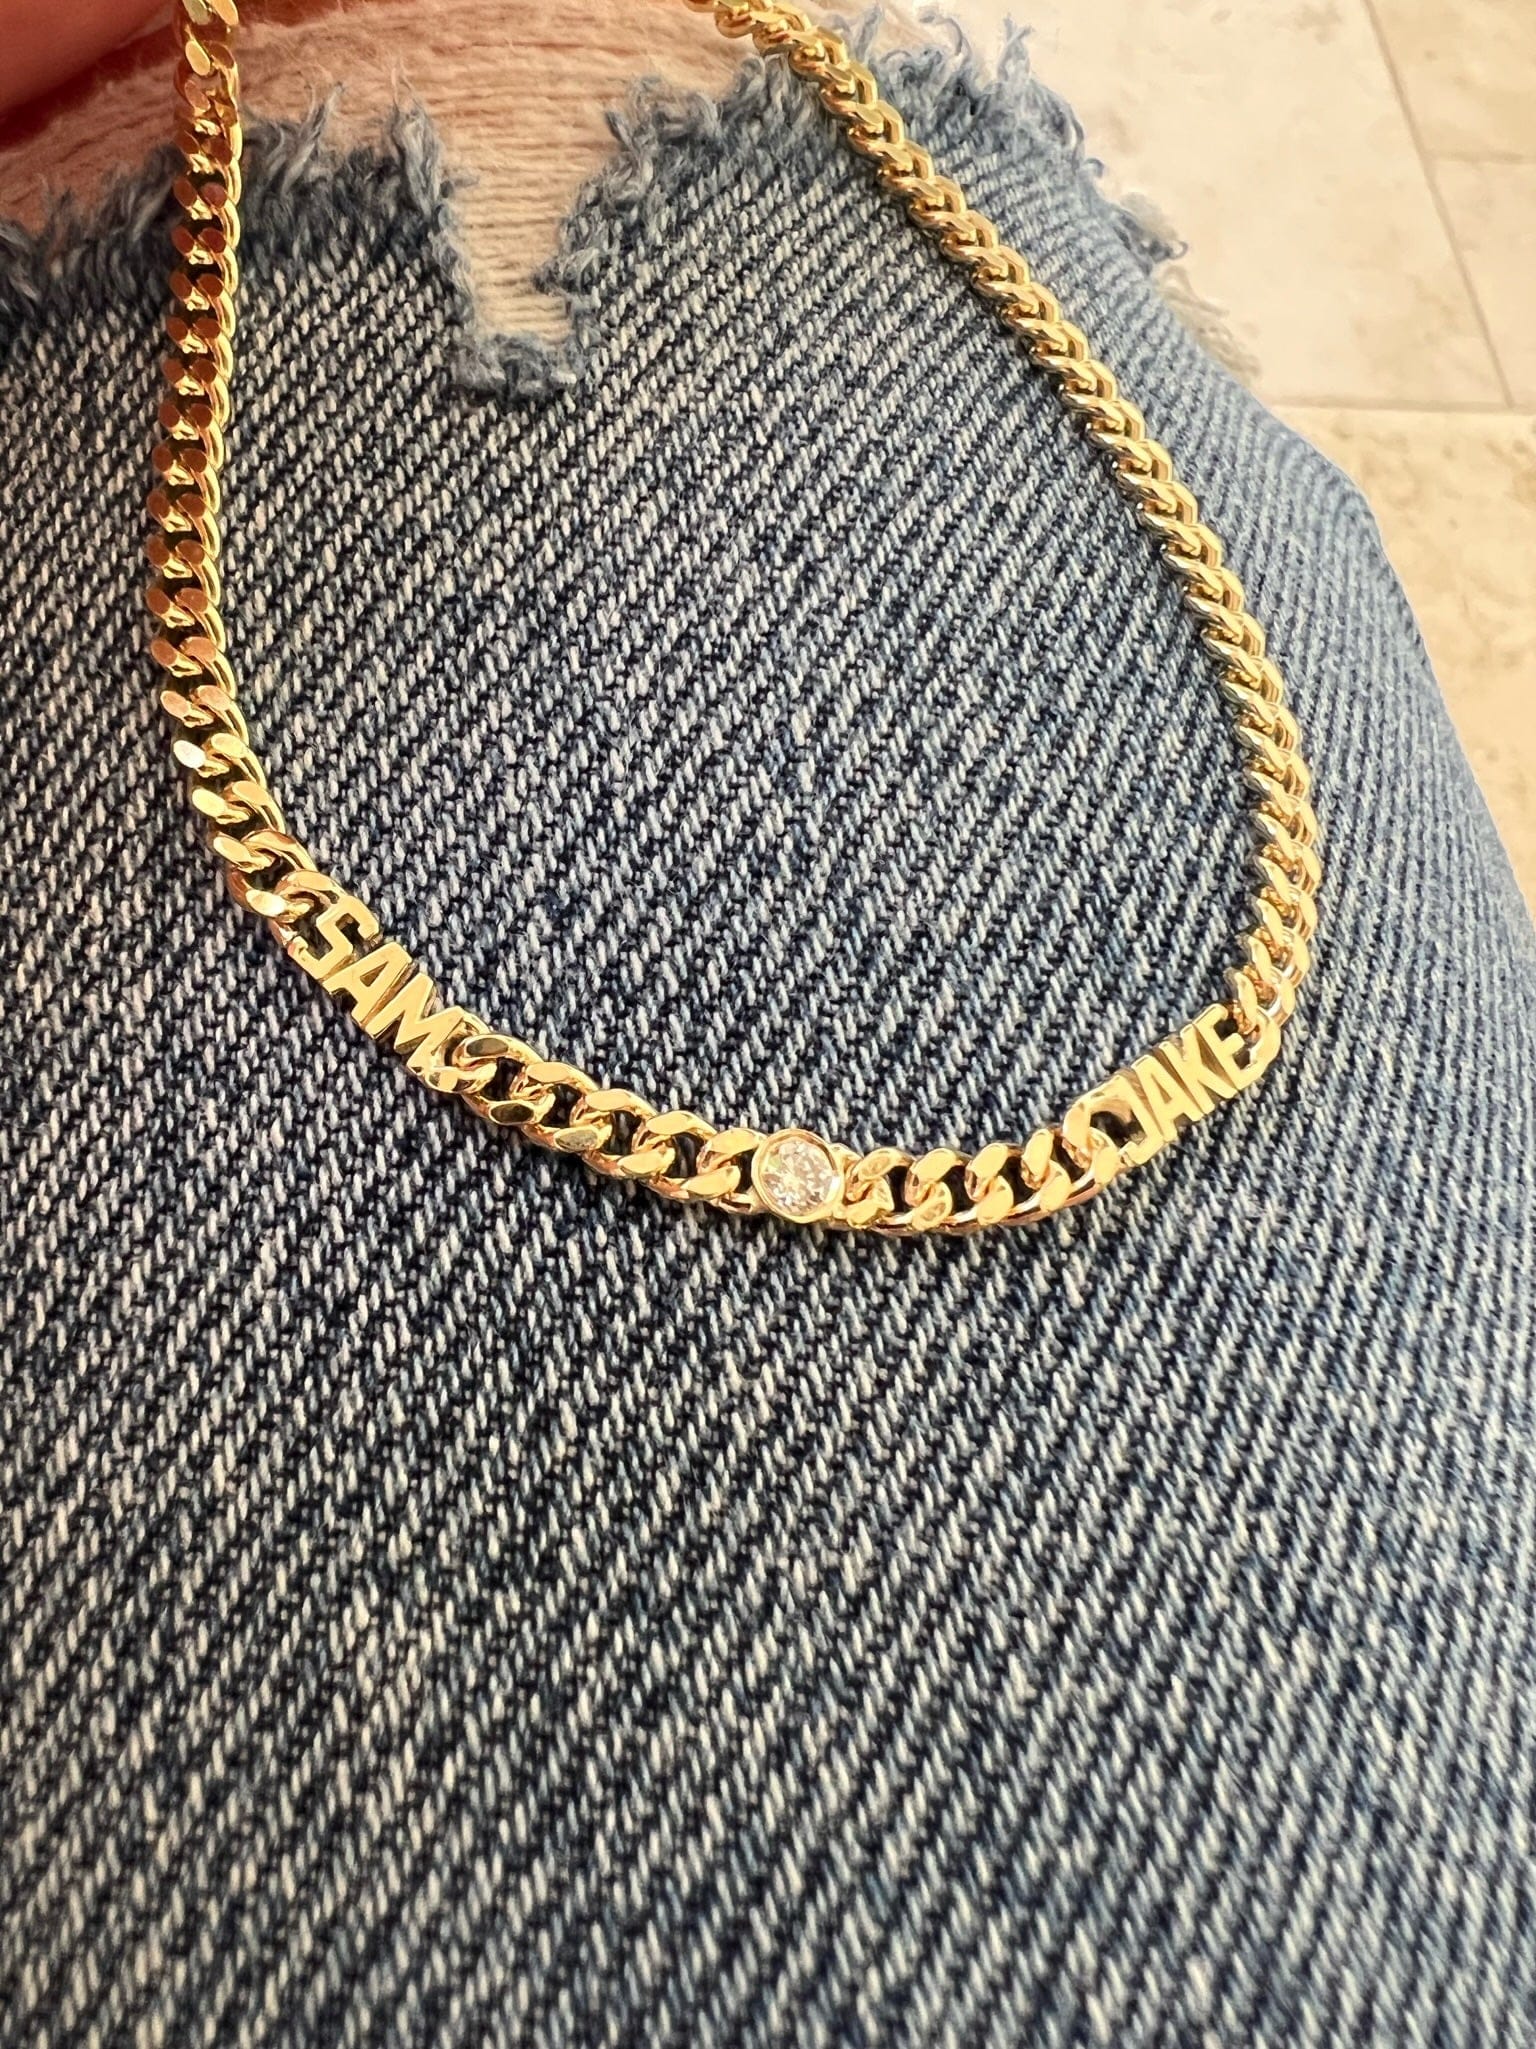 yellow gold chain - custom jewelry